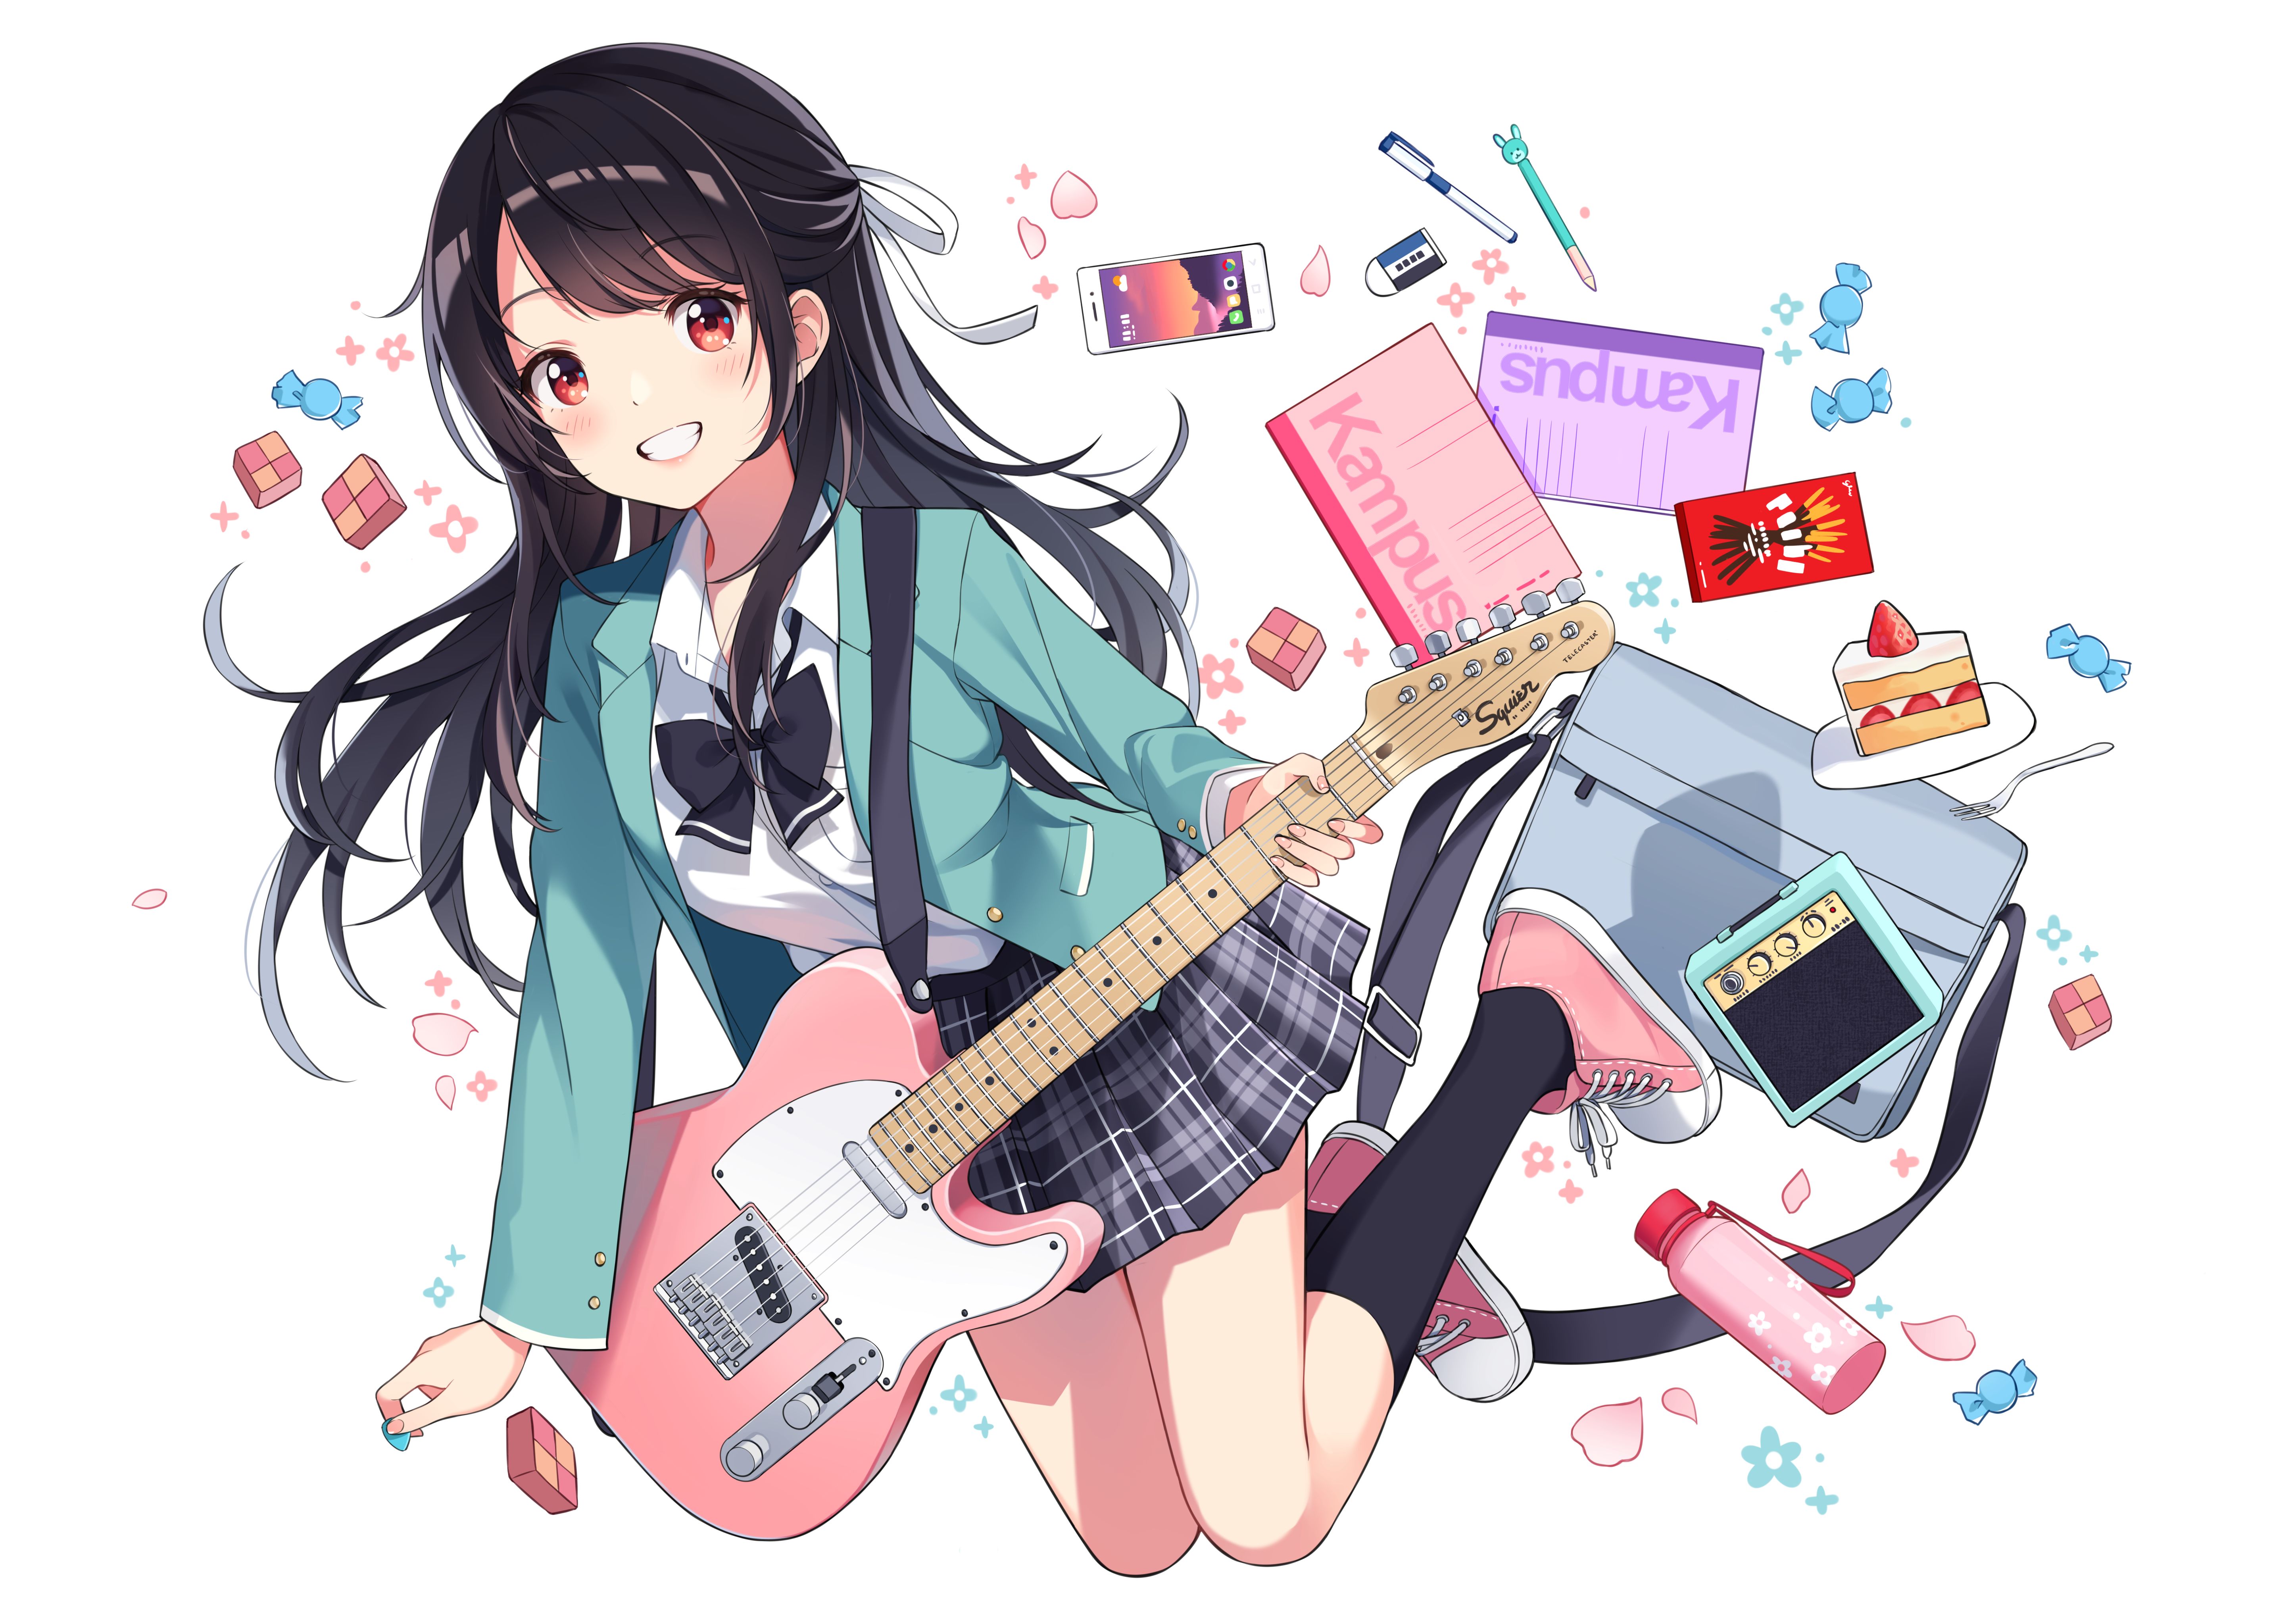 Wallpaper ID: 102066 / K-ON!, anime girls, Akiyama Mio, black hair, long  hair, guitar, microphone, fan art, 2D, black skirts, guitarist, black eyes,  black hat free download